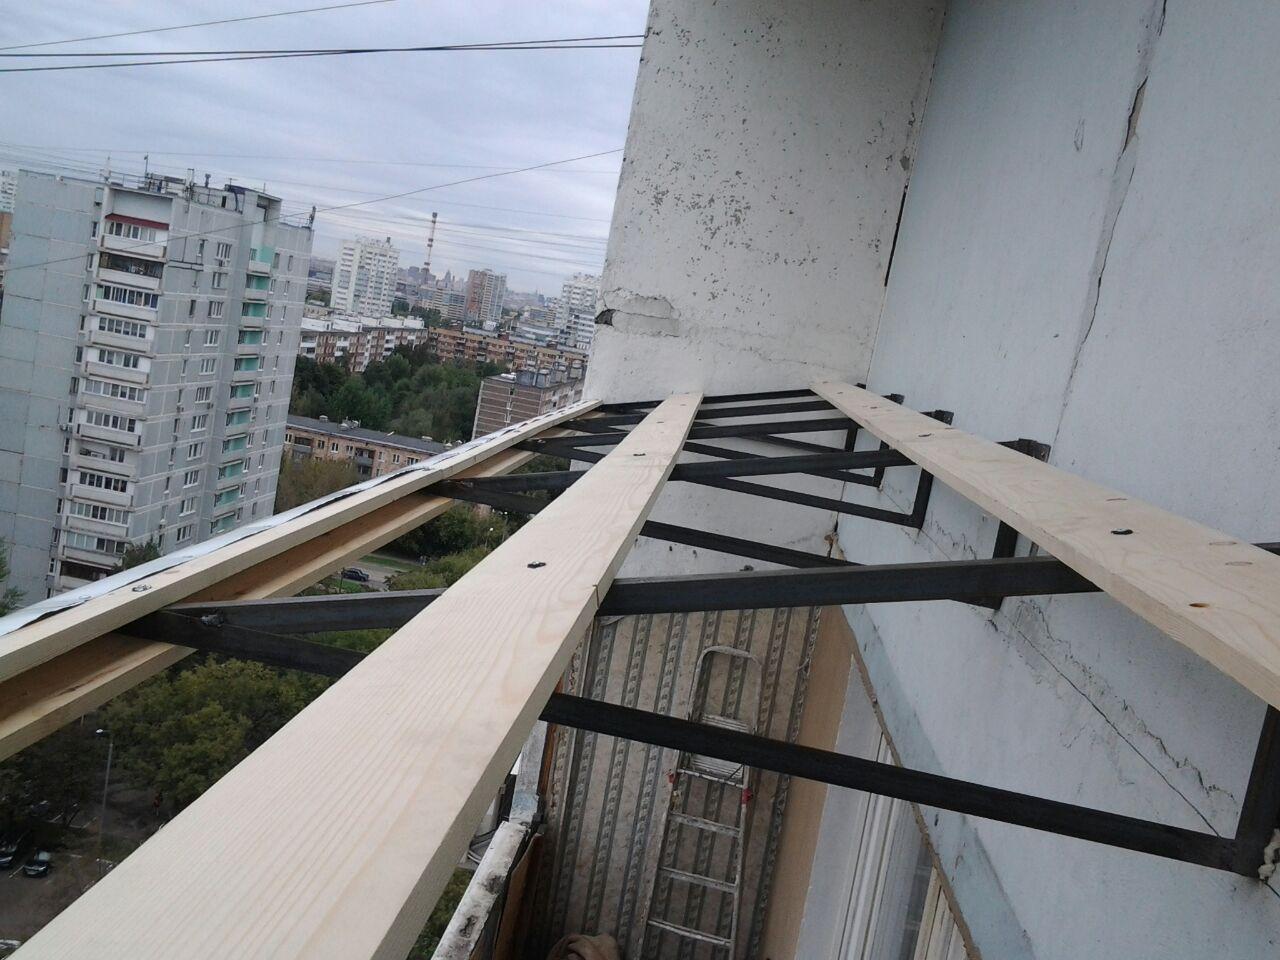 Крыша на балконе: типы конструкций и советы по установке